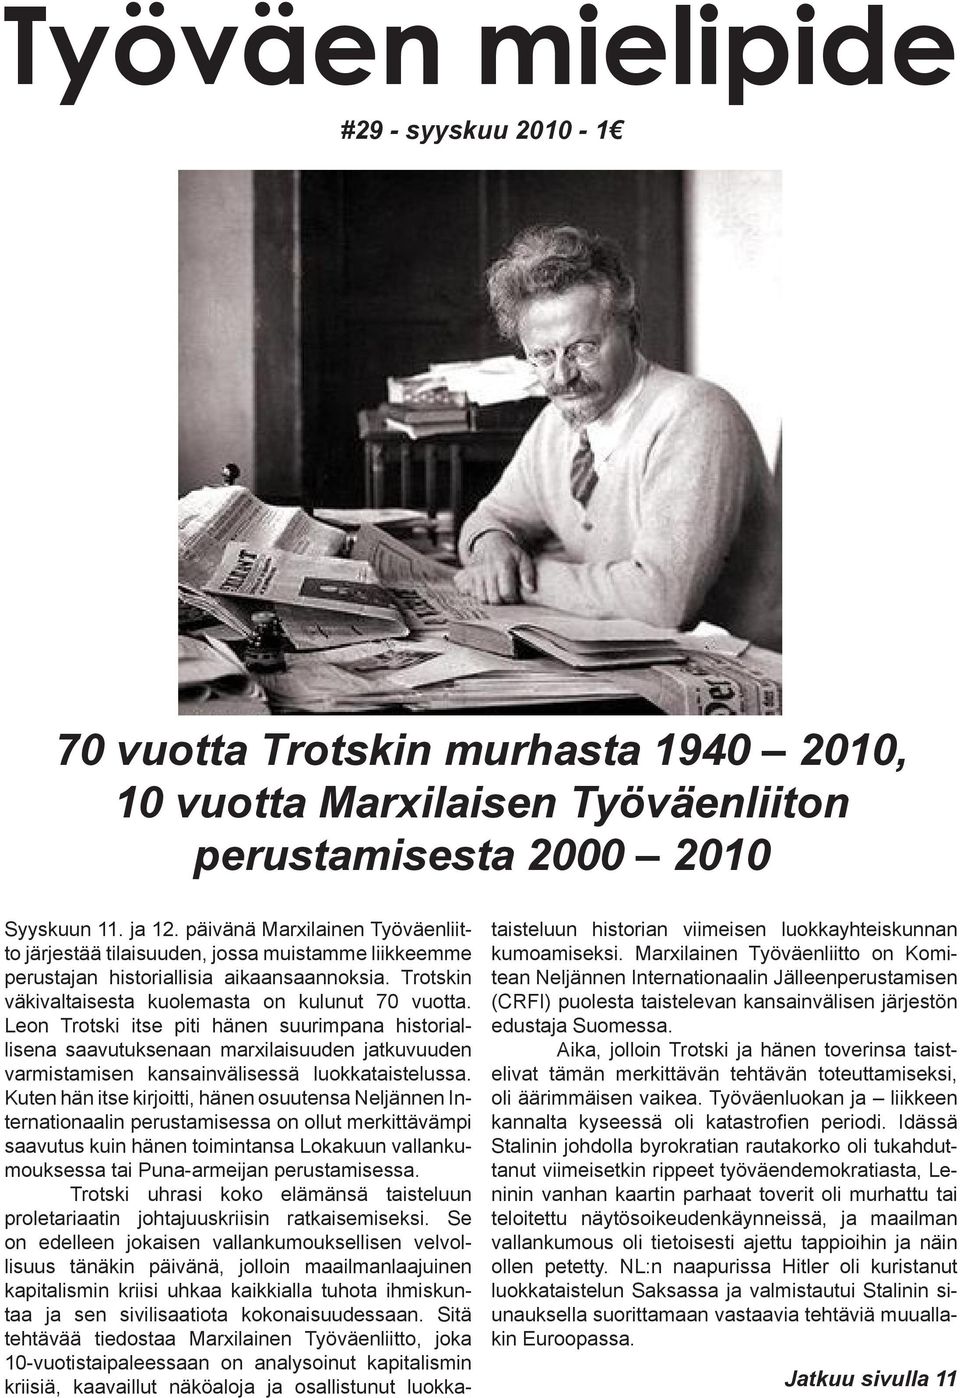 Leon Trotski itse piti hänen suurimpana historiallisena saavutuksenaan marxilaisuuden jatkuvuuden varmistamisen kansainvälisessä luokkataistelussa.